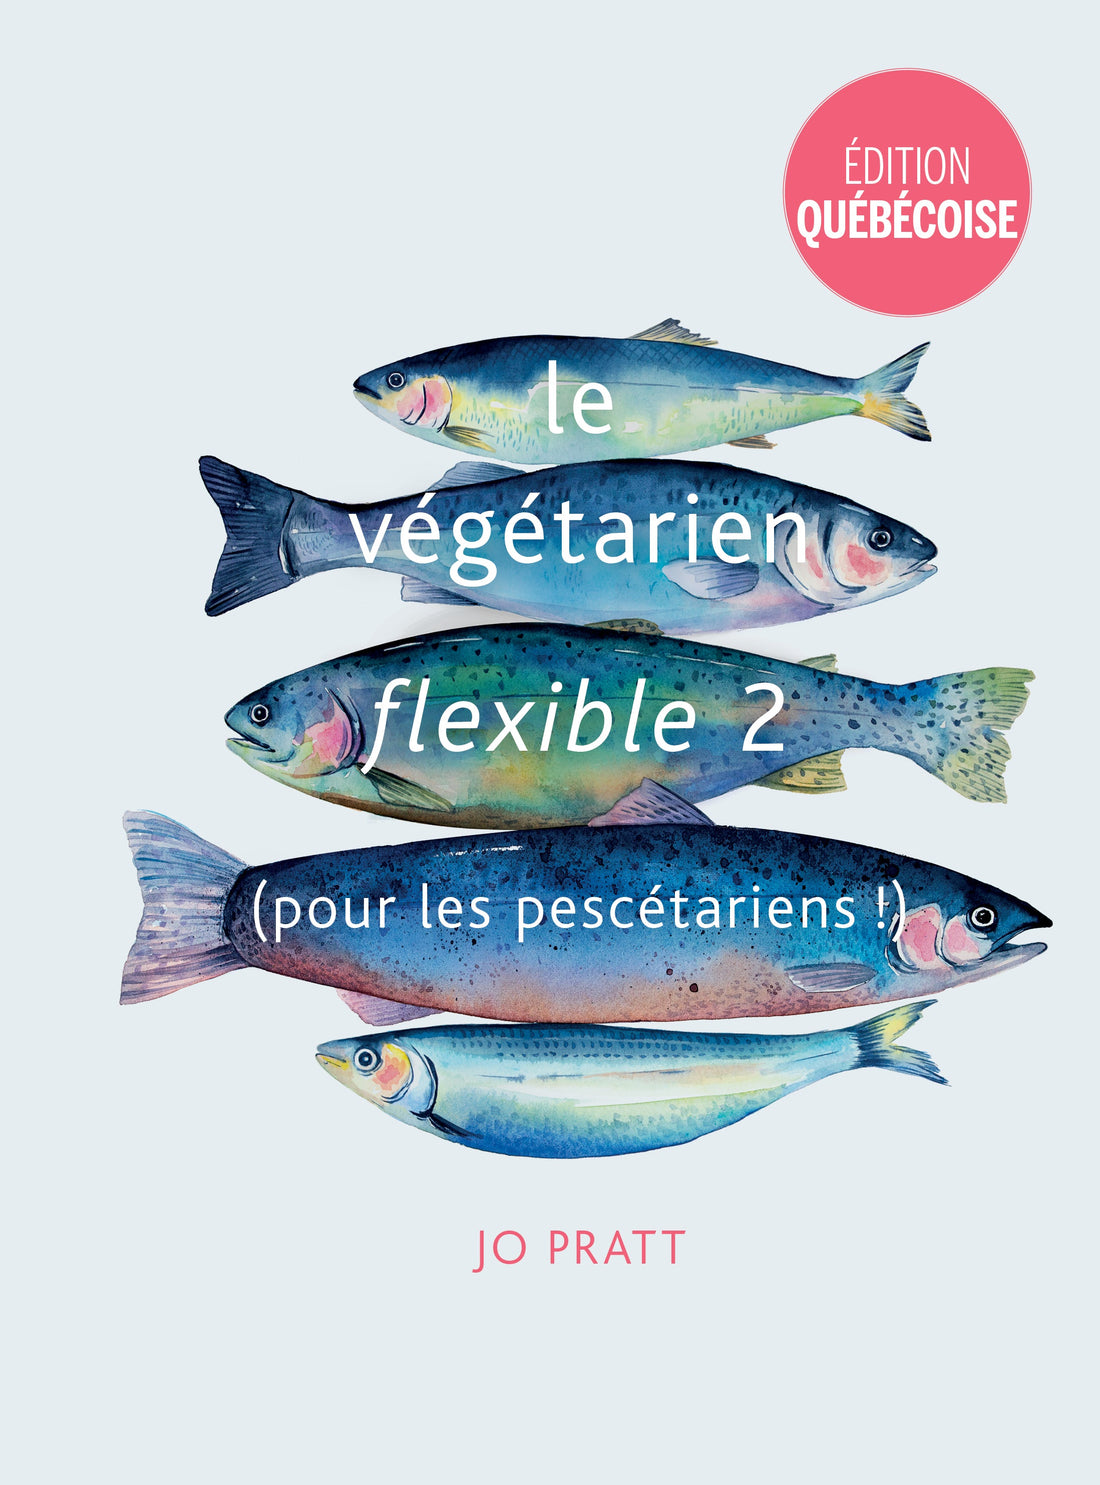 Le végétarien flexible 2 (pour les pescétariens!)